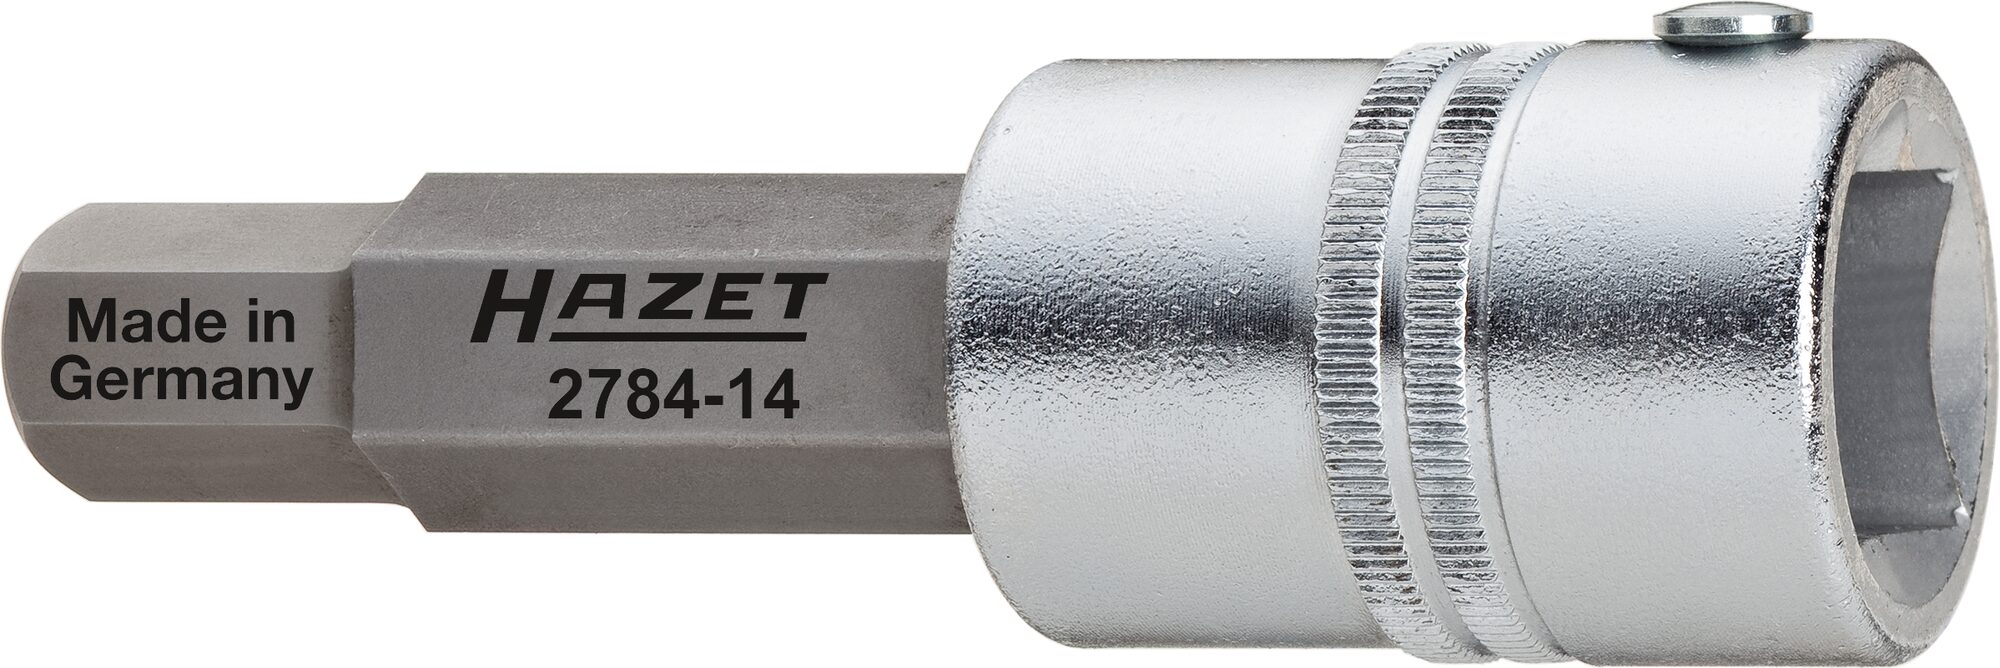 HAZET Bremssattel Schraubendreher-Steckschlüsseleinsatz 2784-14 · Vierkant hohl 20 mm (3/4 Zoll) · Innen Sechskant Profil · 14 mm